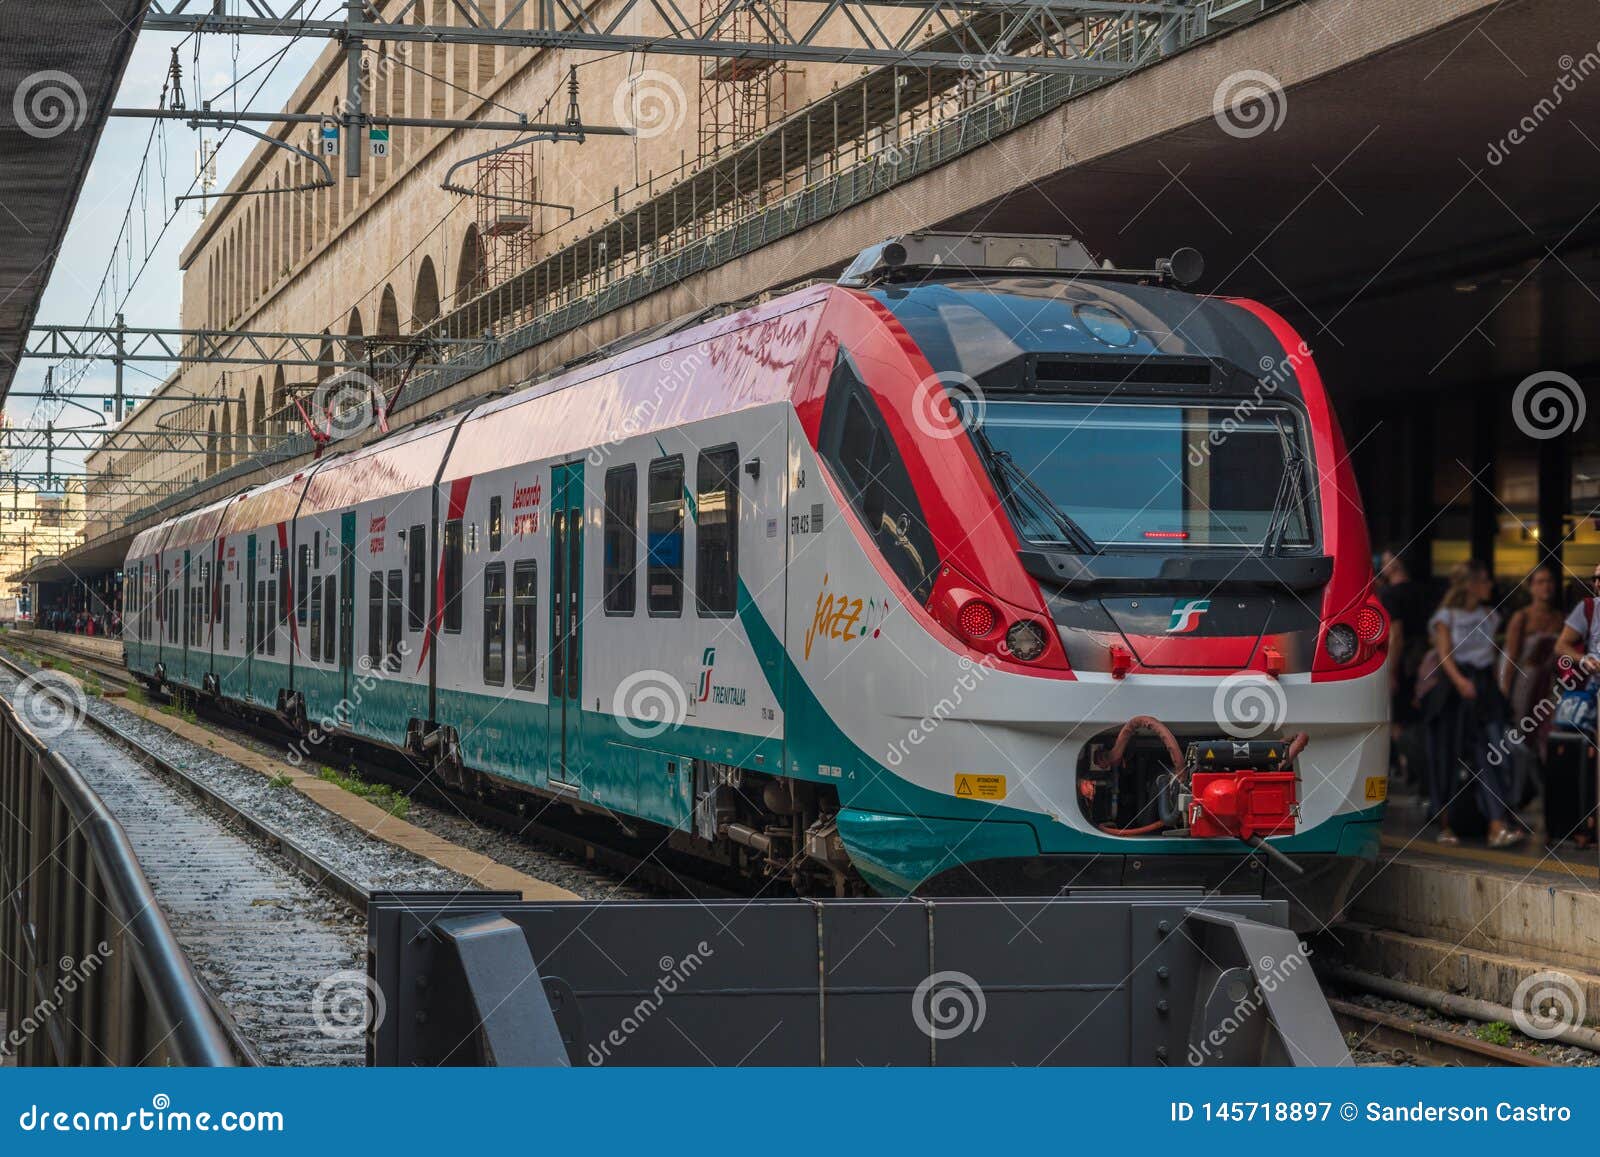 Leonardo Express Trenitalia Stoped at Roma Termini Train Station in Rome -  Italy Editorial Photography - Image of italy, platform: 145718897